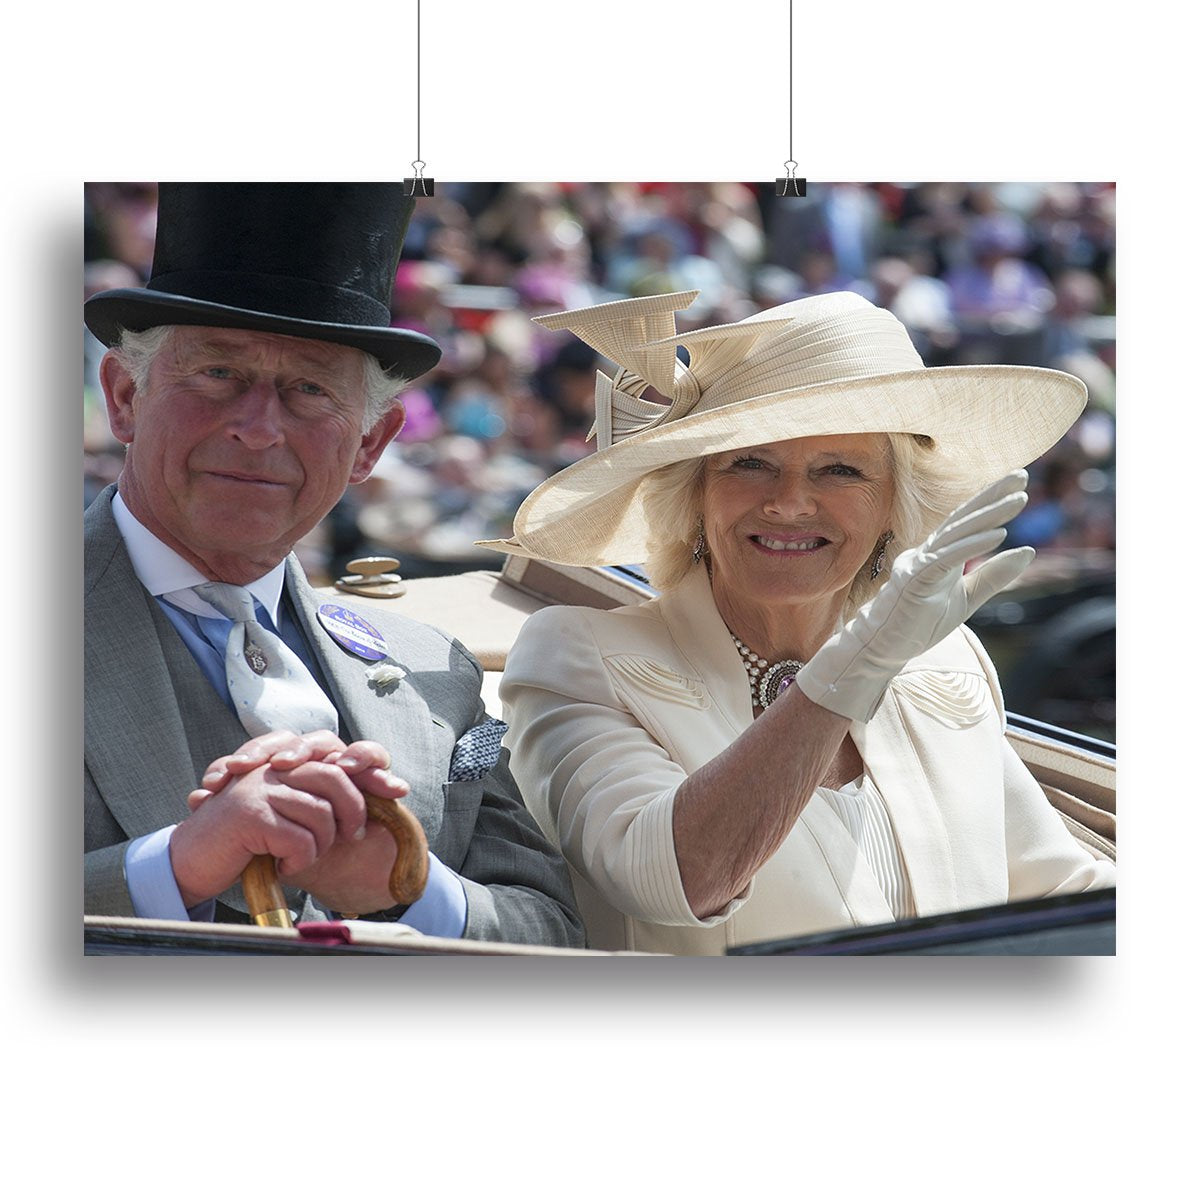 Prince Charles and Camilla at the Royal Ascot Canvas Print or Poster